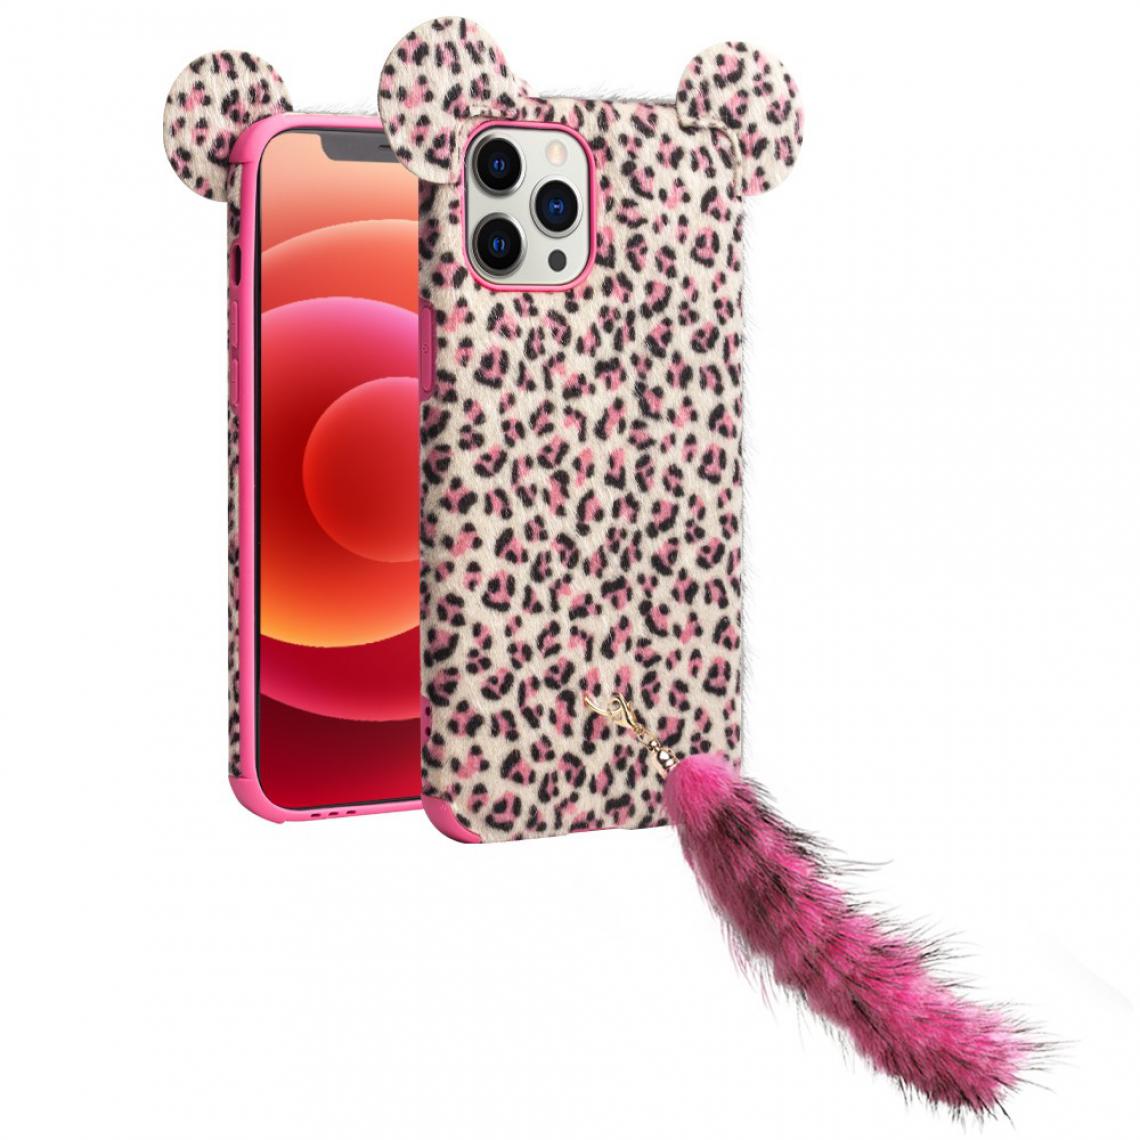 Qialino - Coque en TPU peluche peau de léopard enduite avec oreille et queue en peluche rose pour votre Apple iPhone 12/12 Pro - Coque, étui smartphone